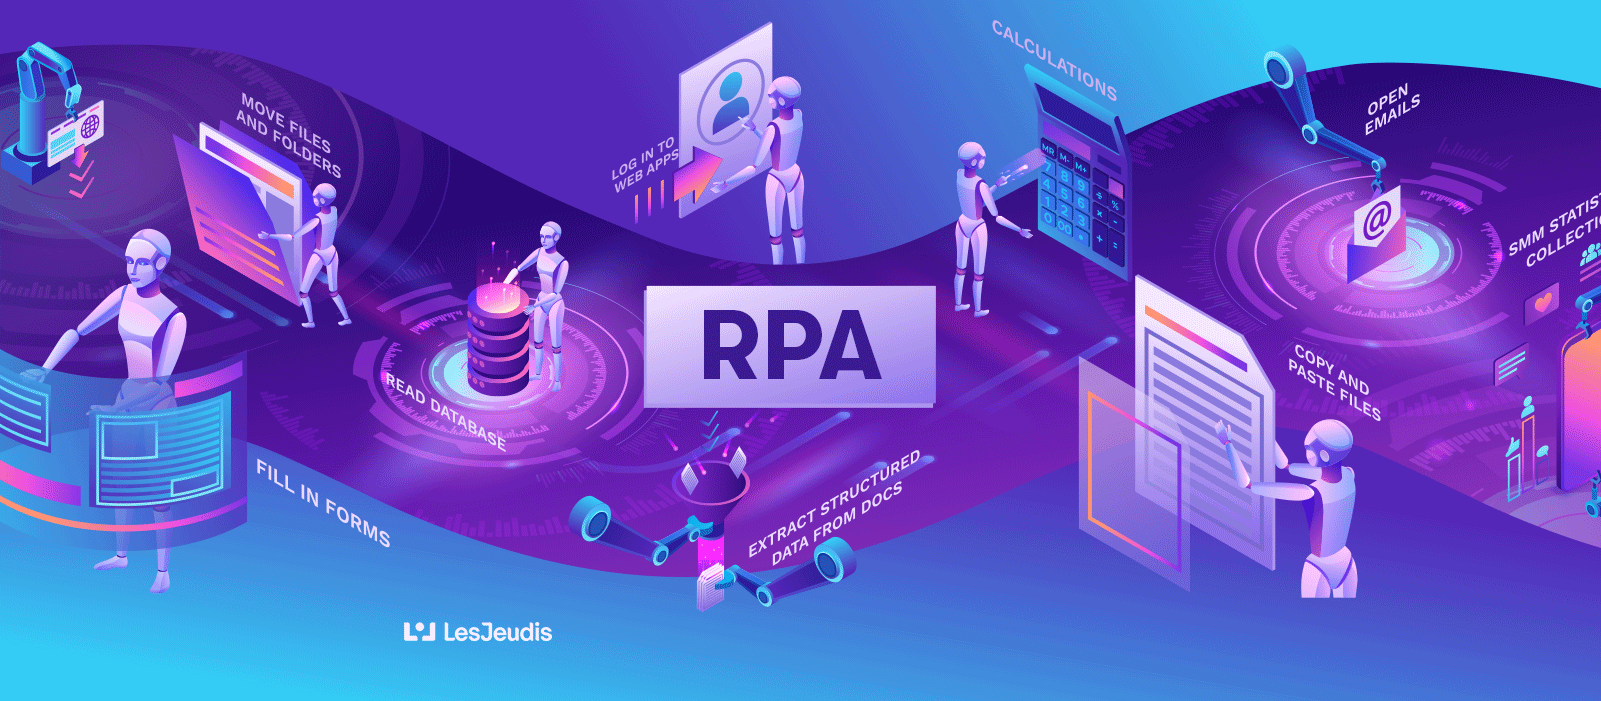 Le processus du RPA (Robotic Process Automation)